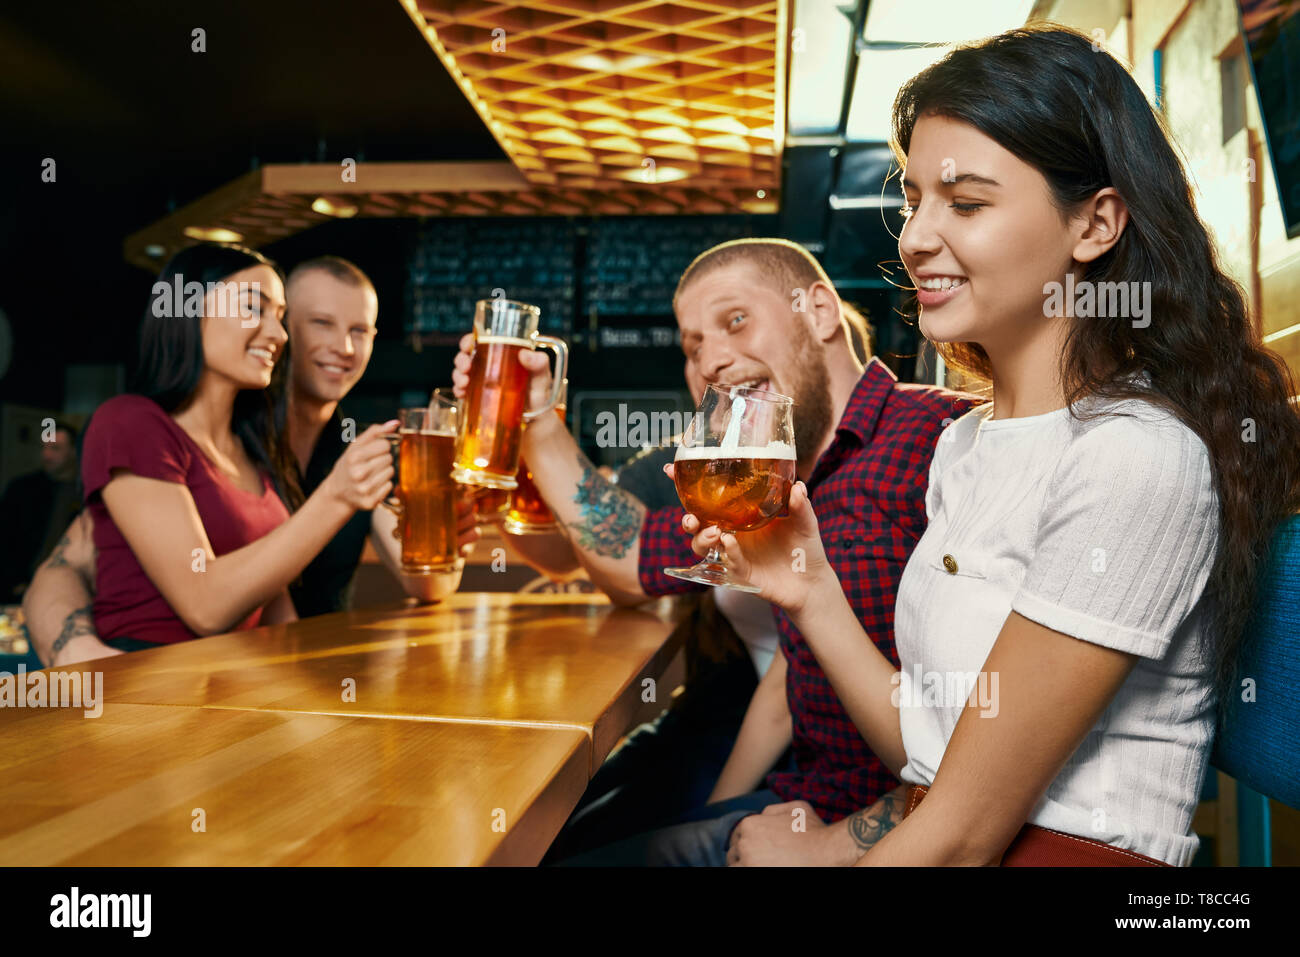 Side view of young smiling brunette profiter de temps libre avec des amis heureux et de boire une bière dans un bar. Cheerful company de boire de l'alcool, parler et rire dans un pub. Concept de boissons et d'amusement. Banque D'Images